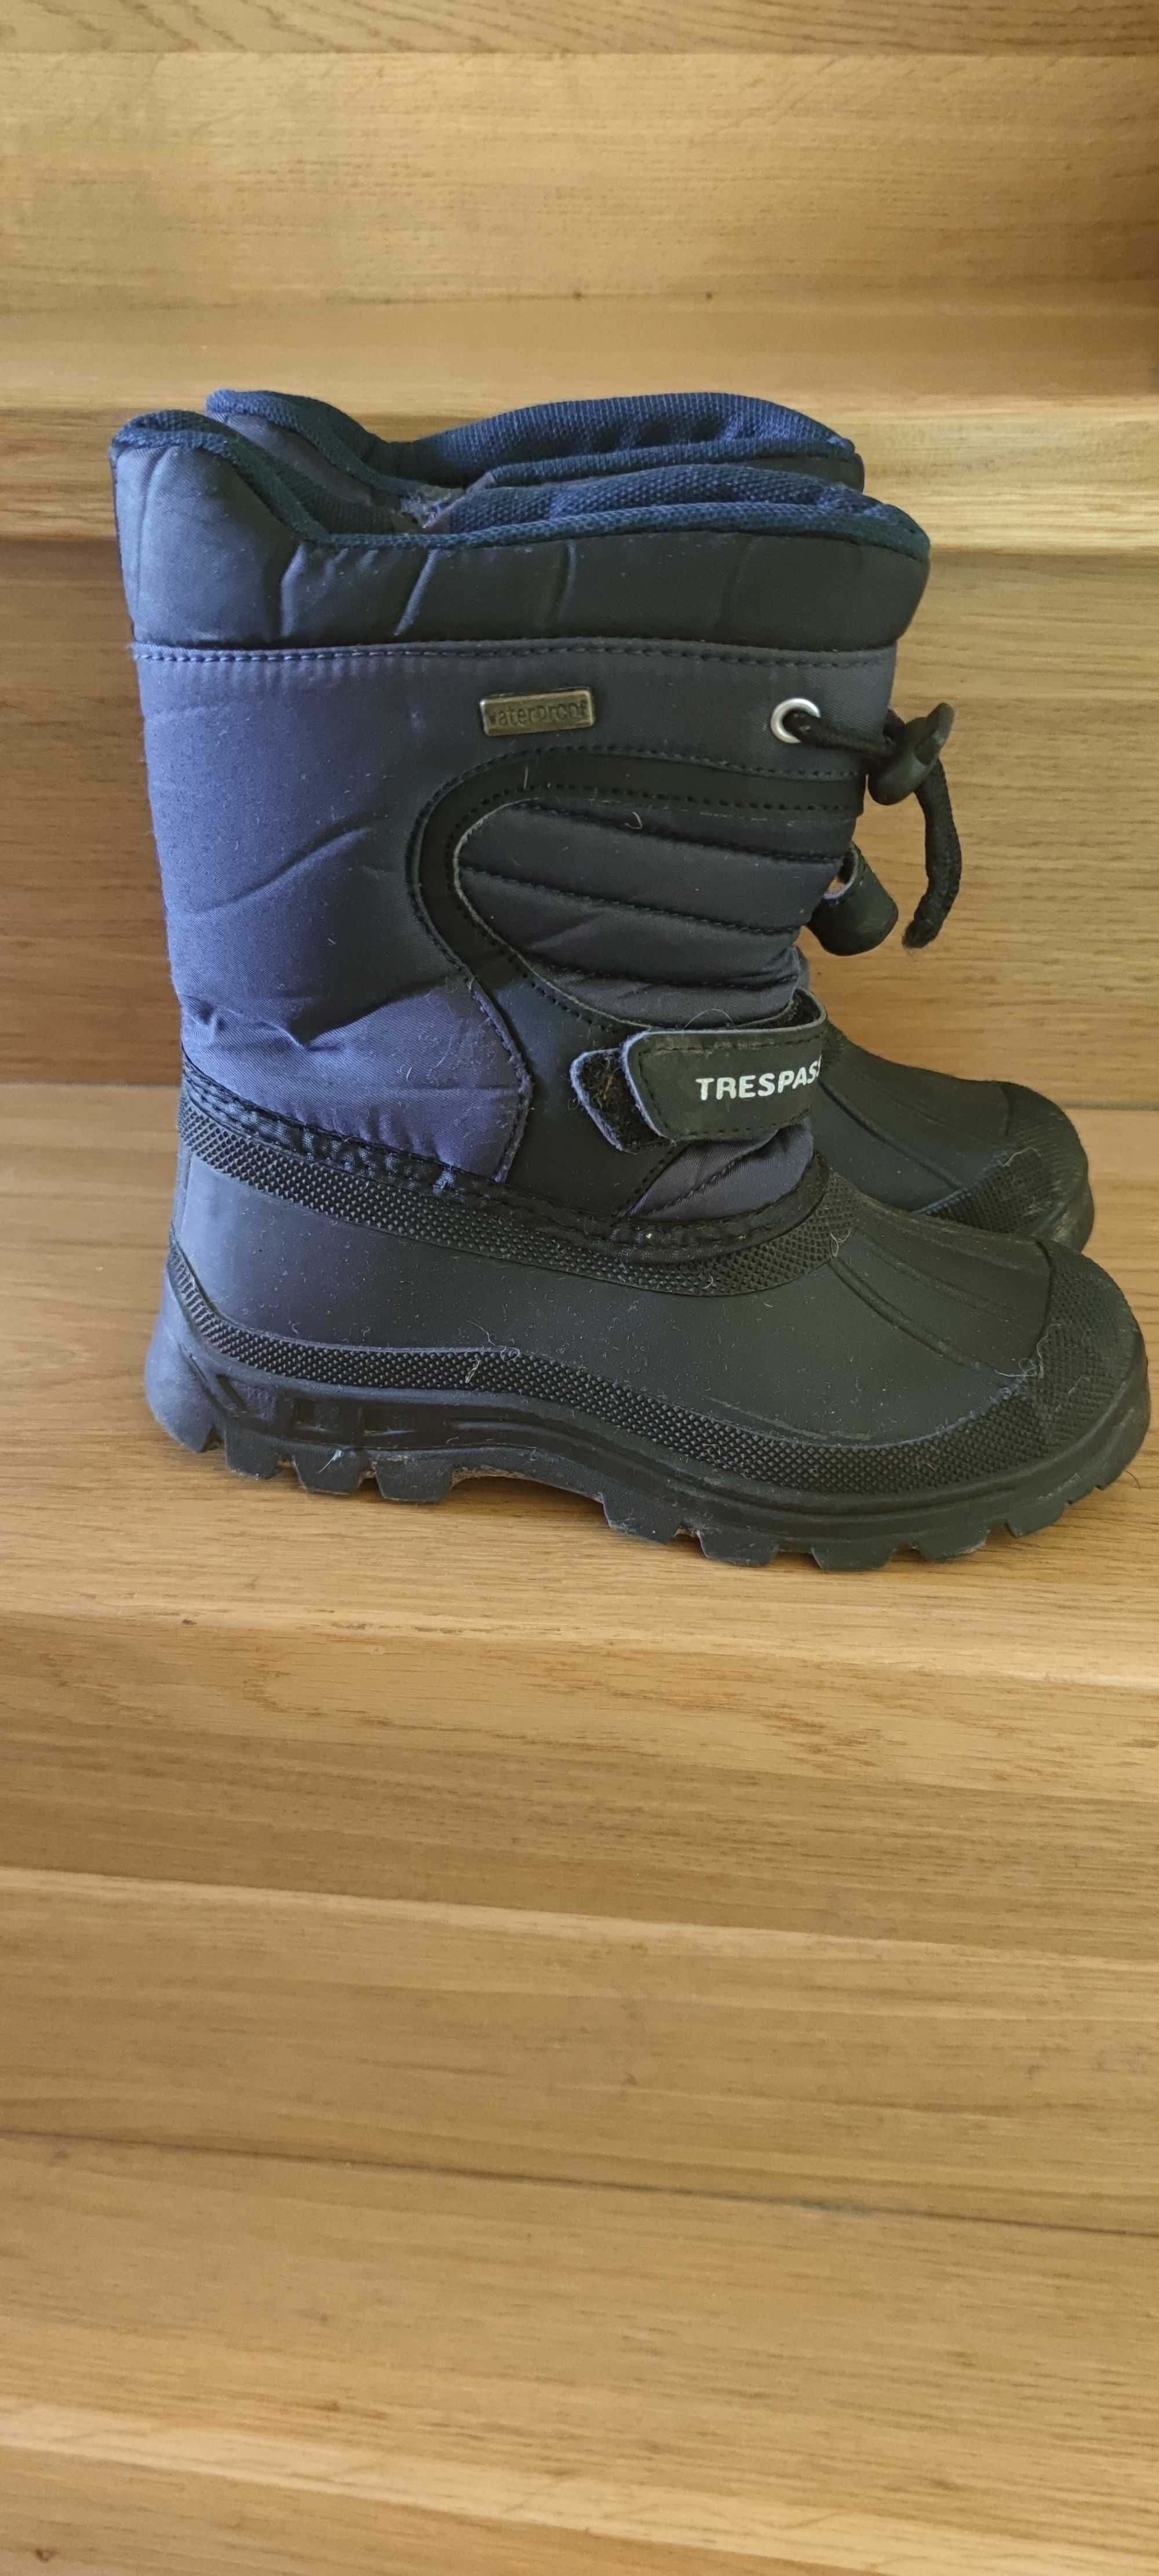 Jak nowe 31 Trespass śniegowce buty zimowe ocieplane dla chłopca